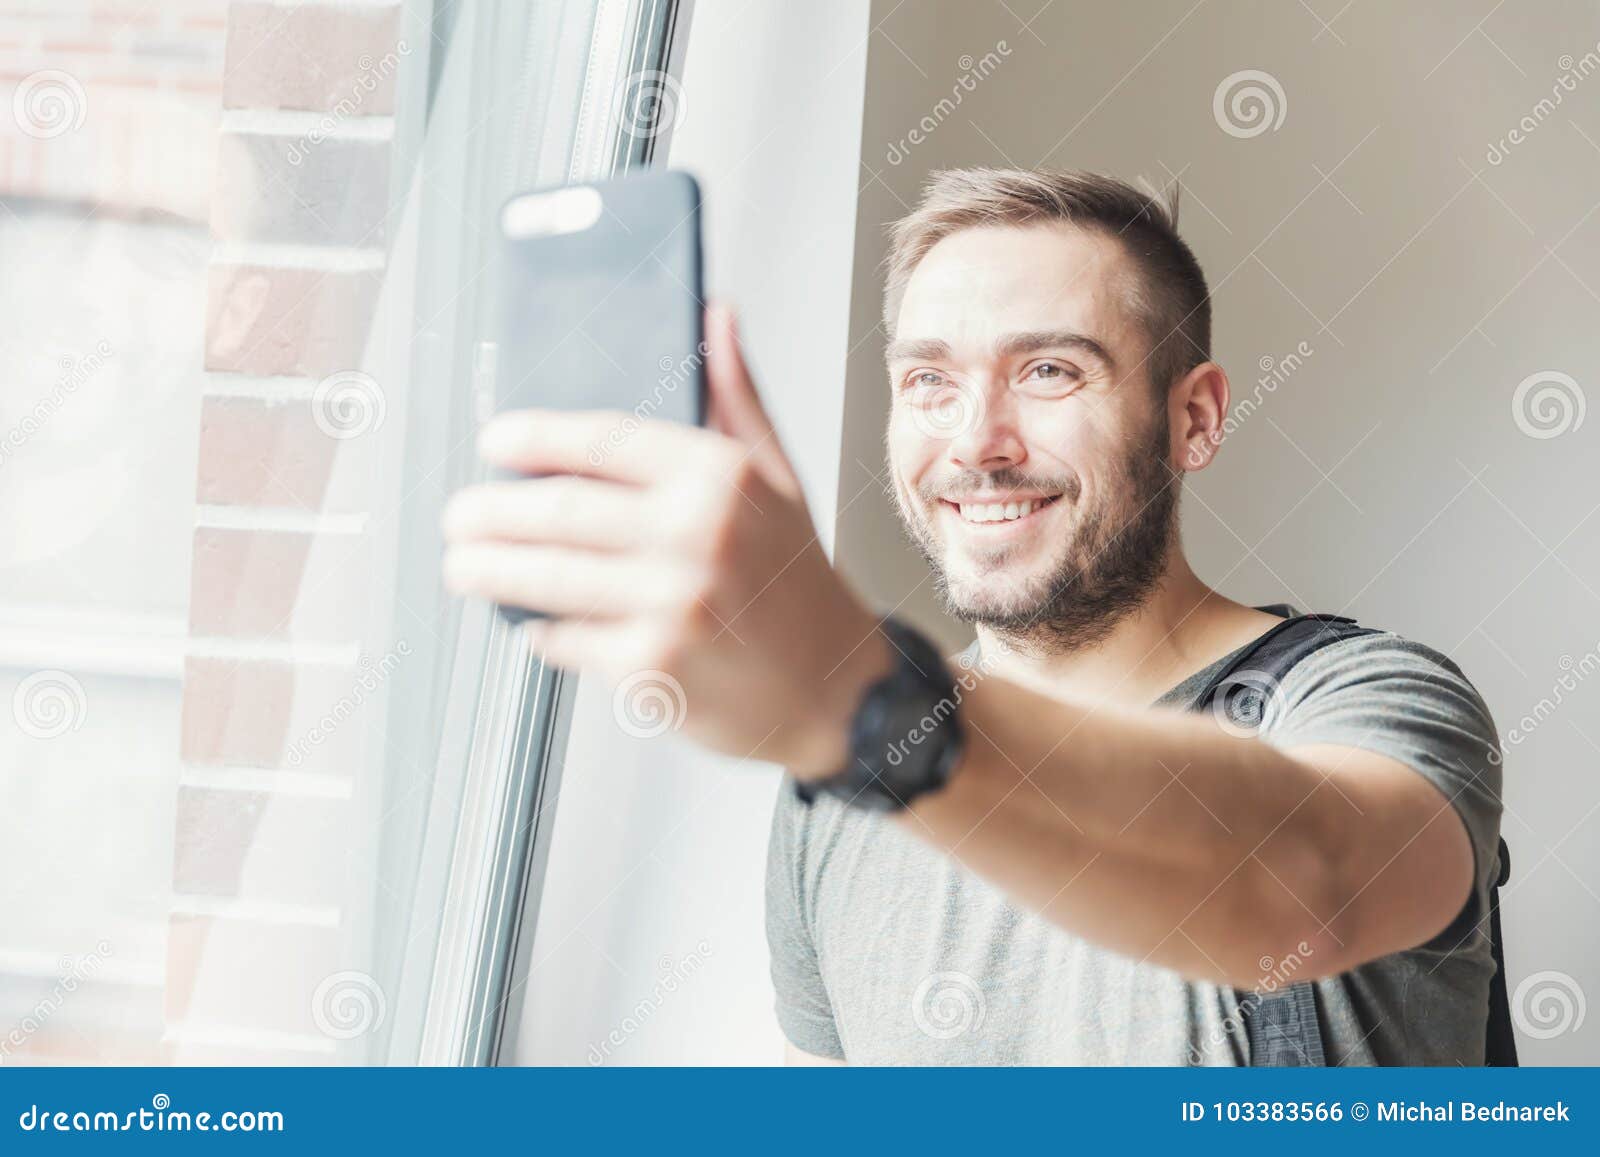 millenial man taking a selfie.